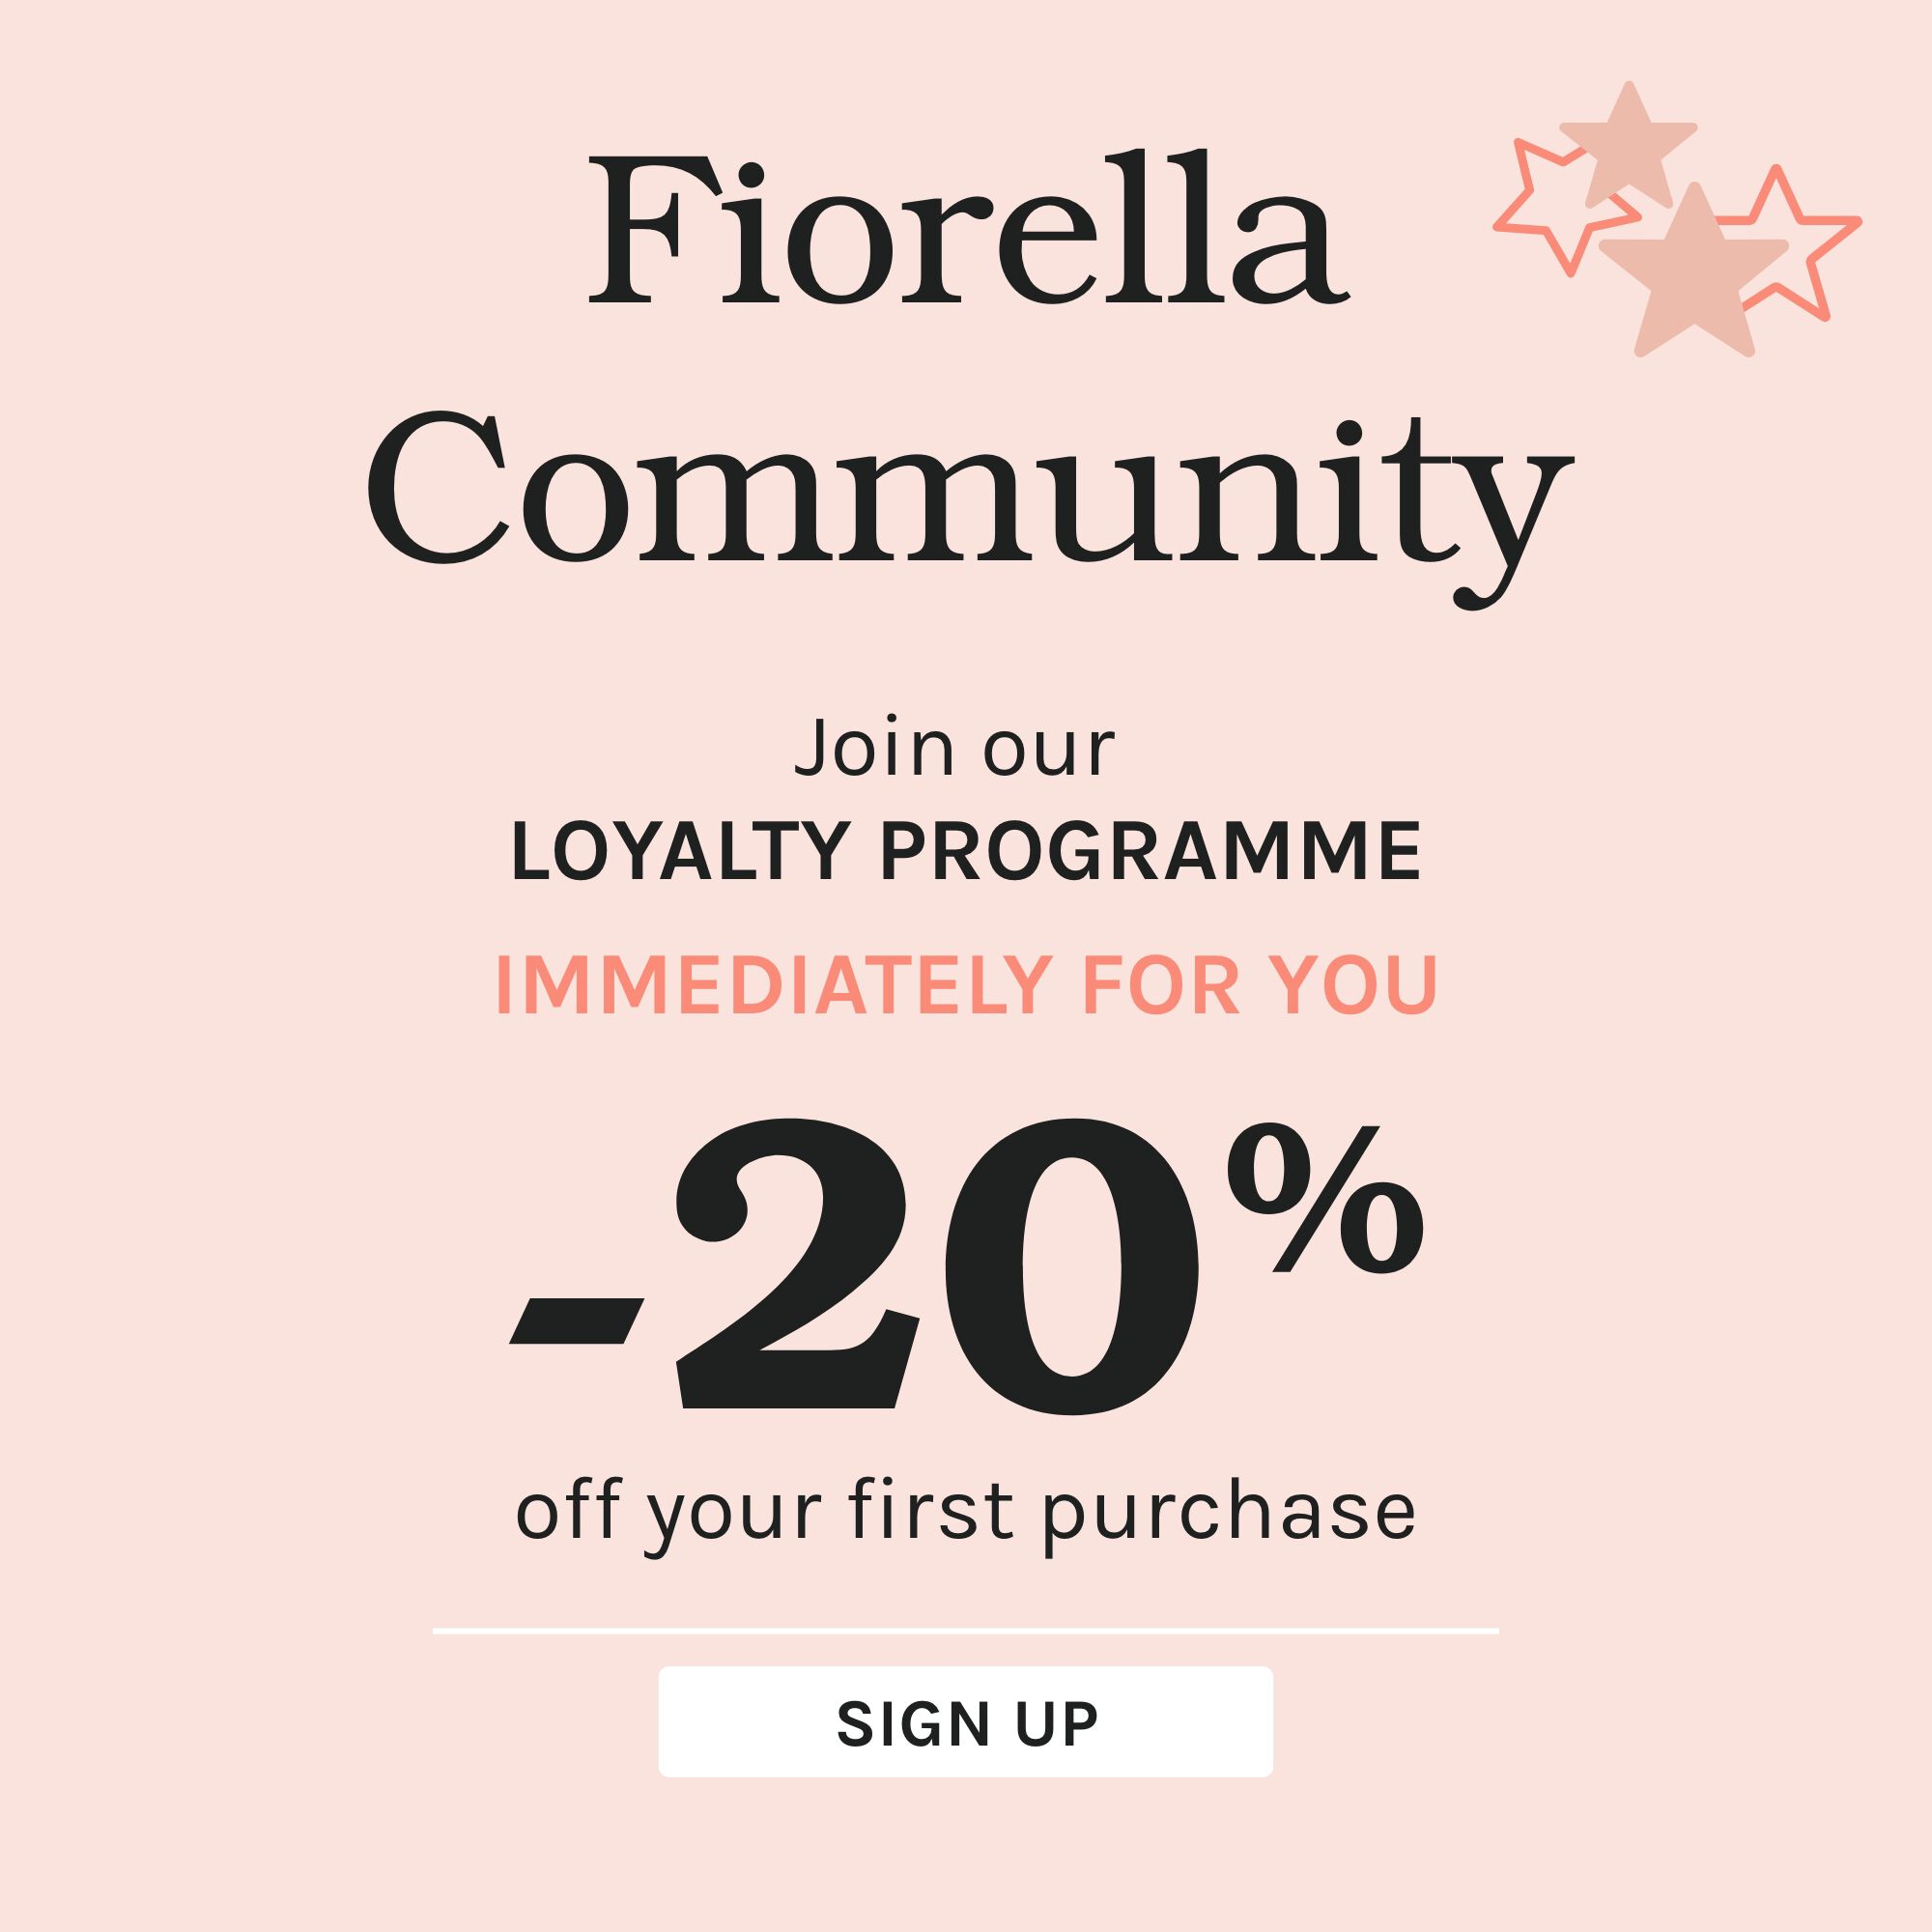 Fiorella Community